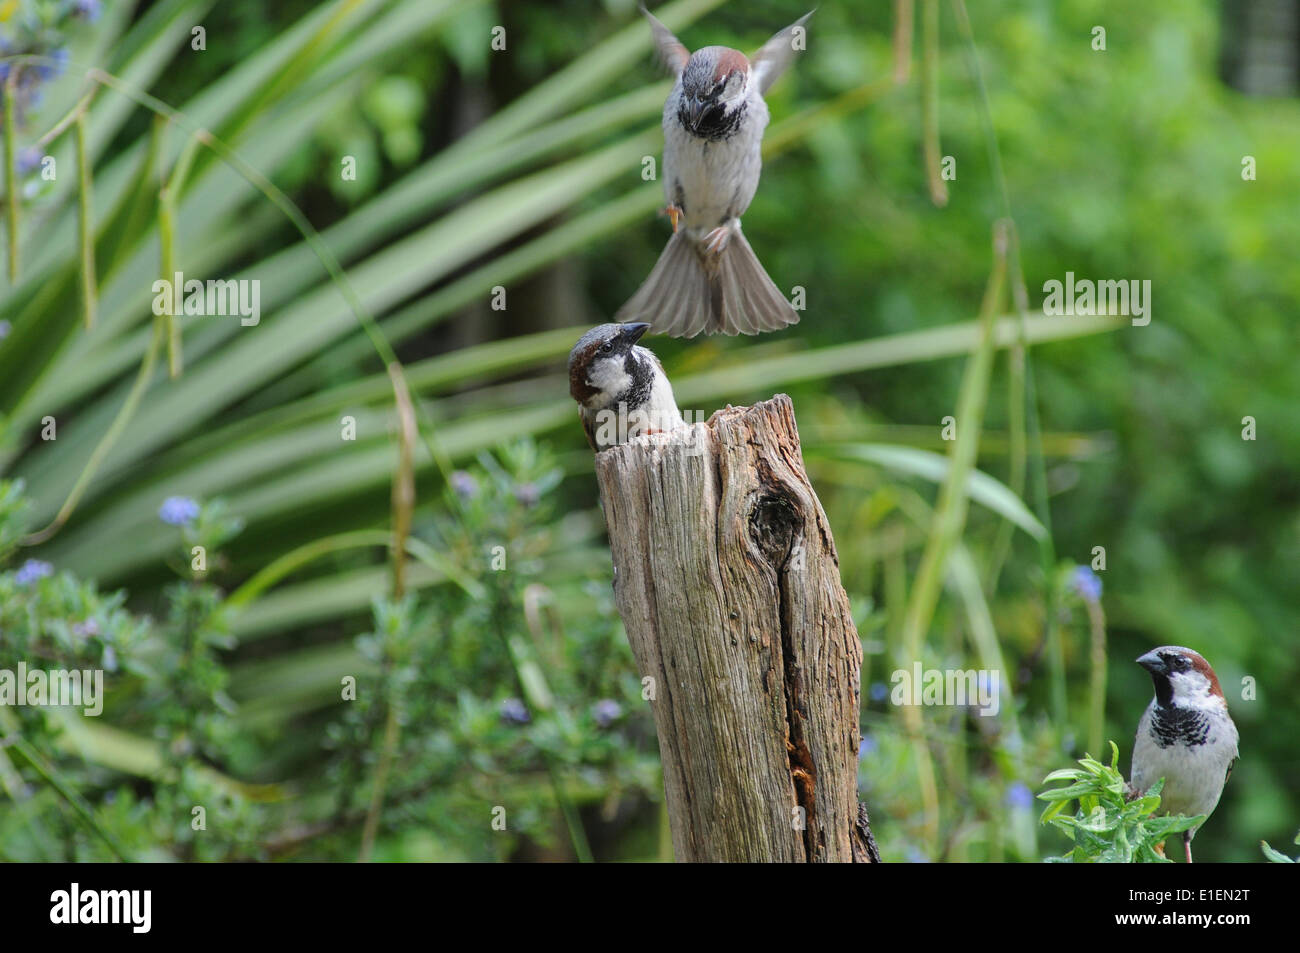 Broad Oak, Heathfield, East Sussex, UK.2 June 2014.Sparrows combattere contro il worm mealworm nascosto in un vecchio palo da recinzione. Alimentazione frenzy ora per alimentare nuovi hatchlings. Alcuni interessanti studi di volo. Foto Stock